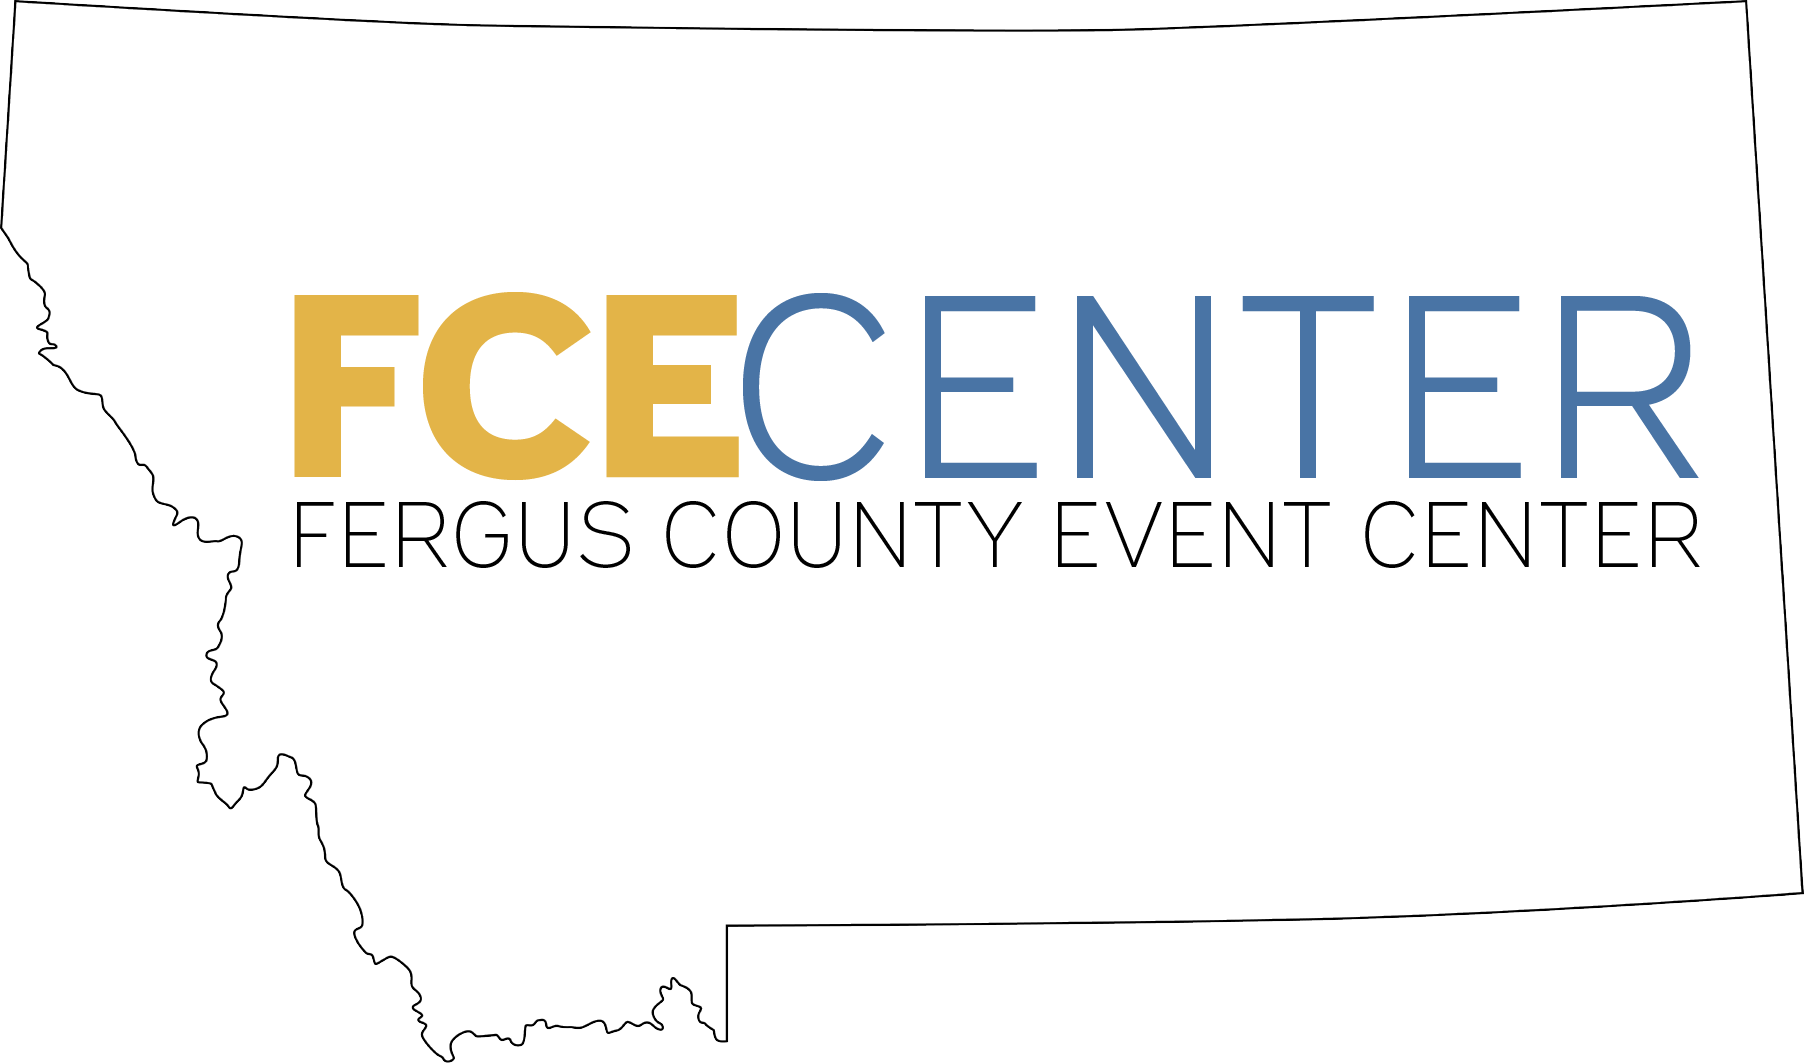 Fergus County Event Center